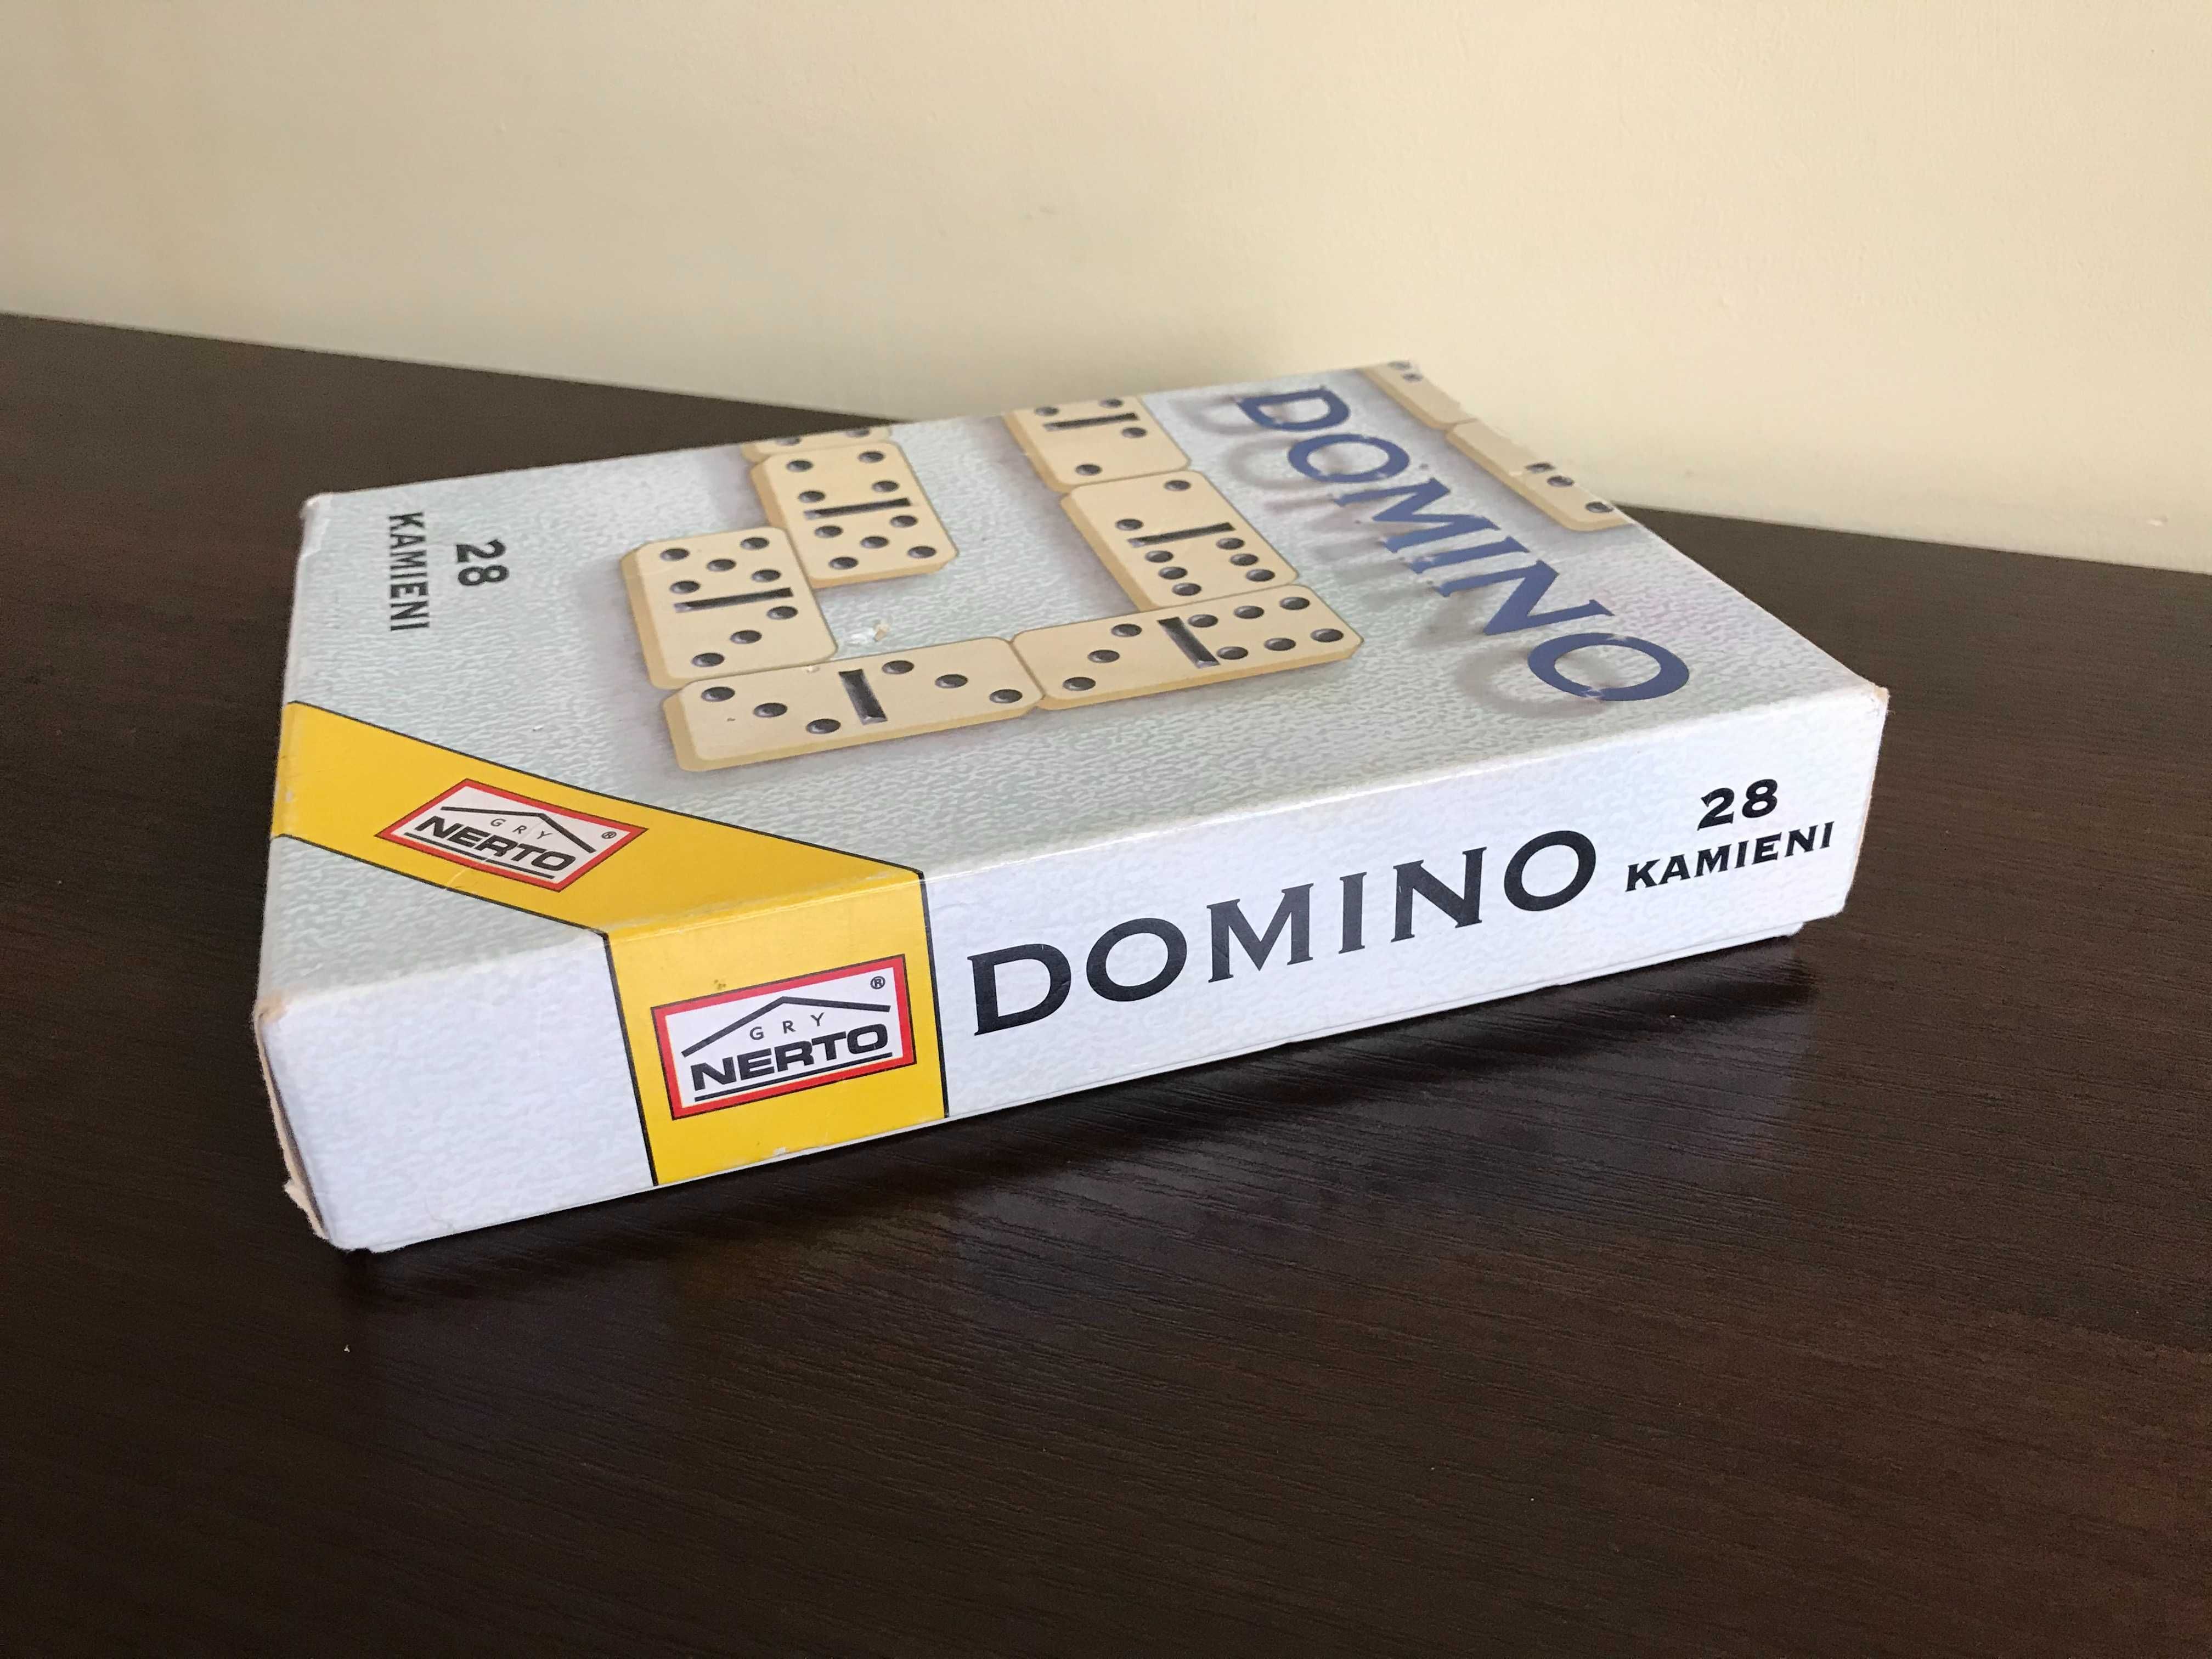 Domino tradycyjne 28 kamieni NERTO